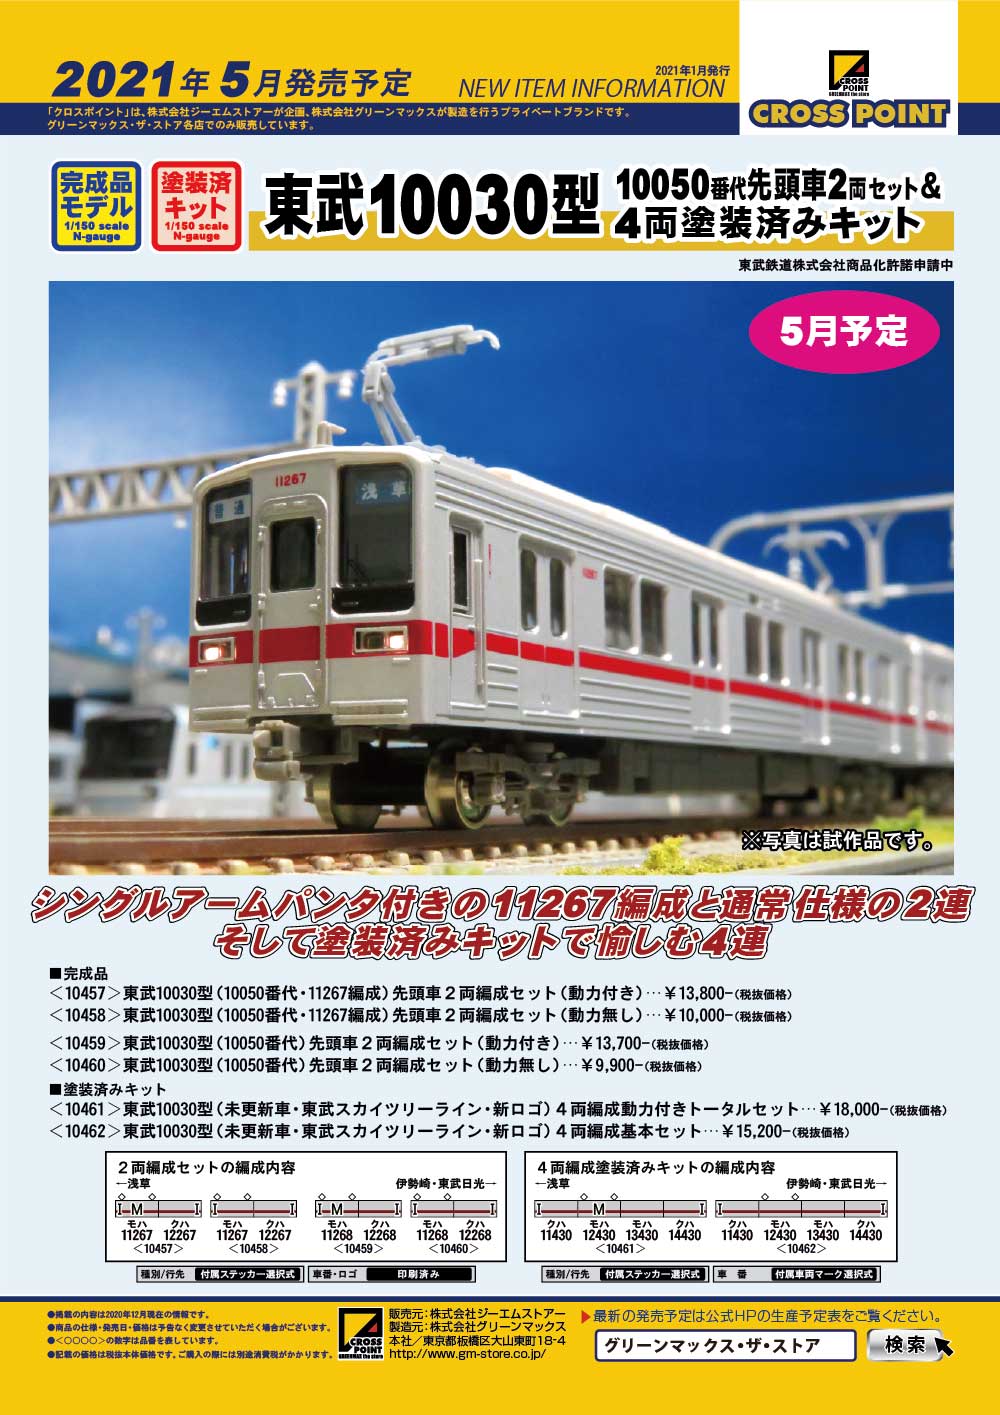 クロスポイント 10459 10030型 - 鉄道模型